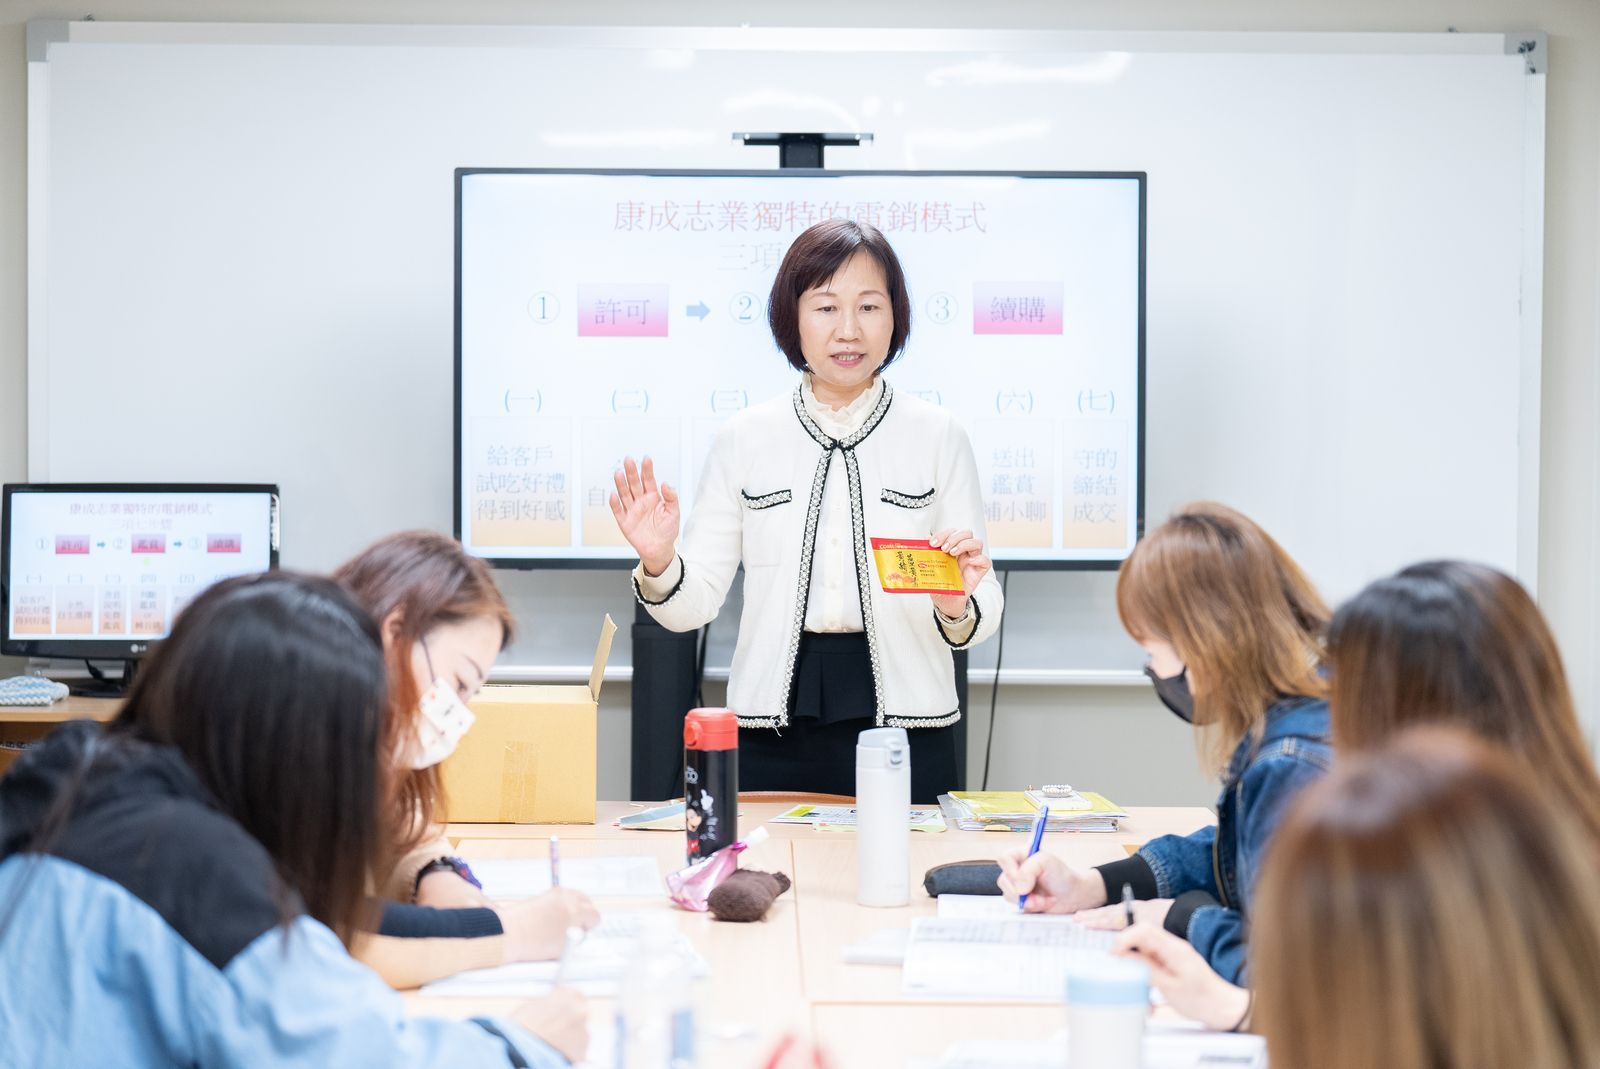 江美月經理將康成志業電銷培訓的成功模式複製到高雄。